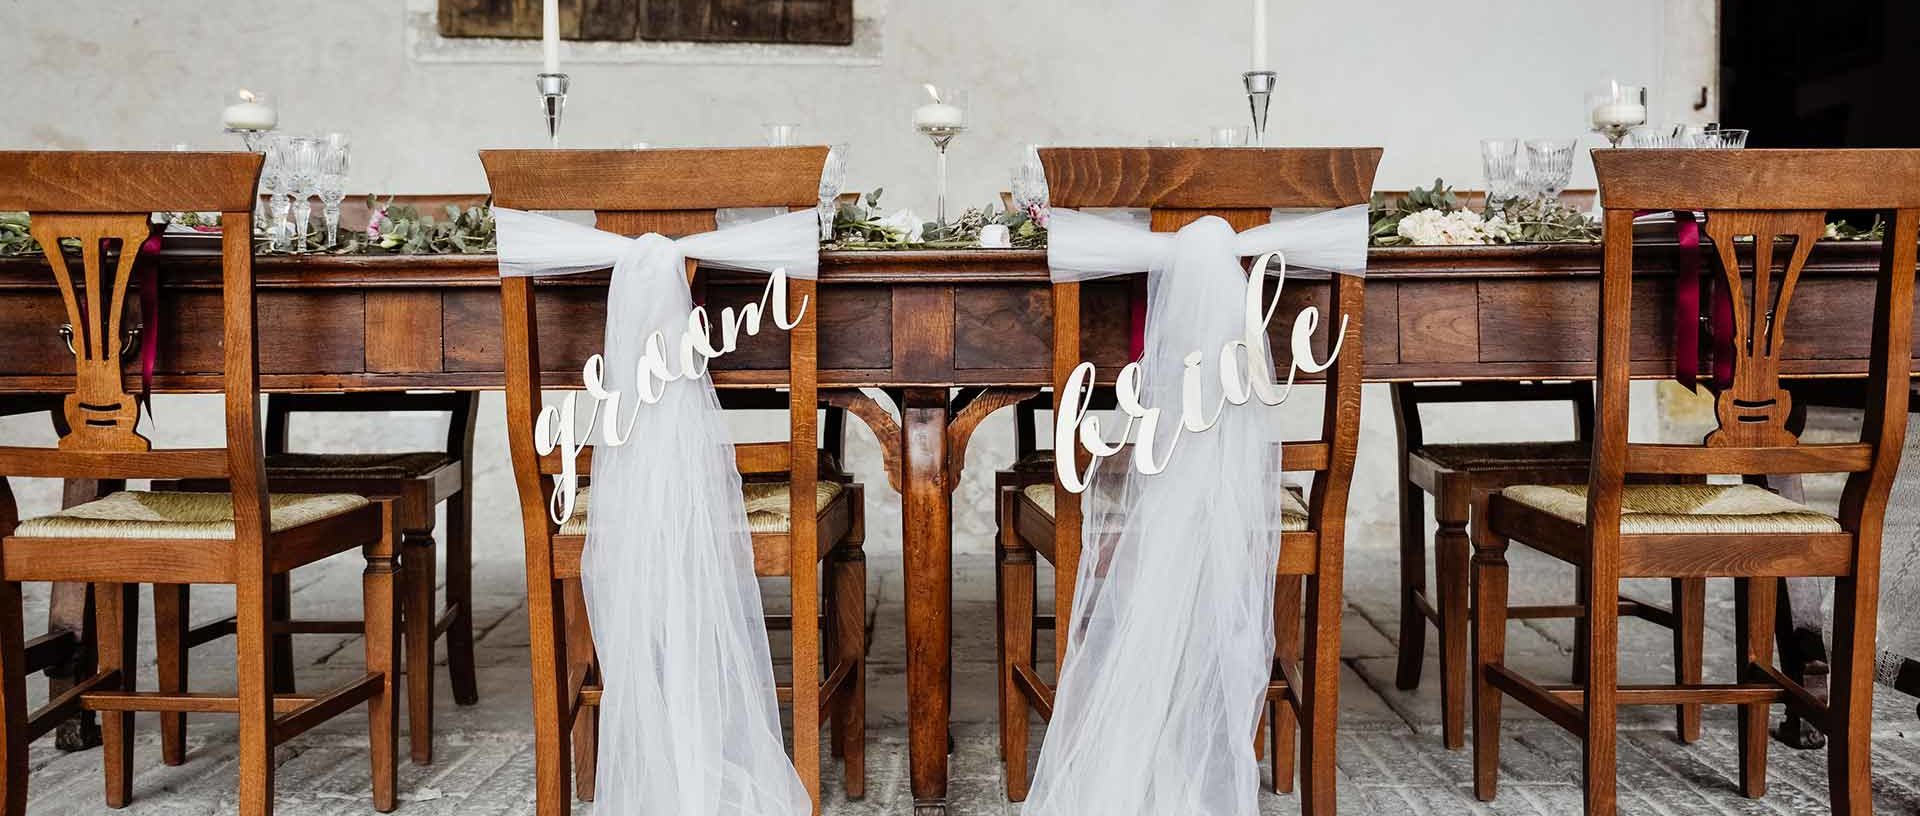 sedie sposi tavola matrimonio